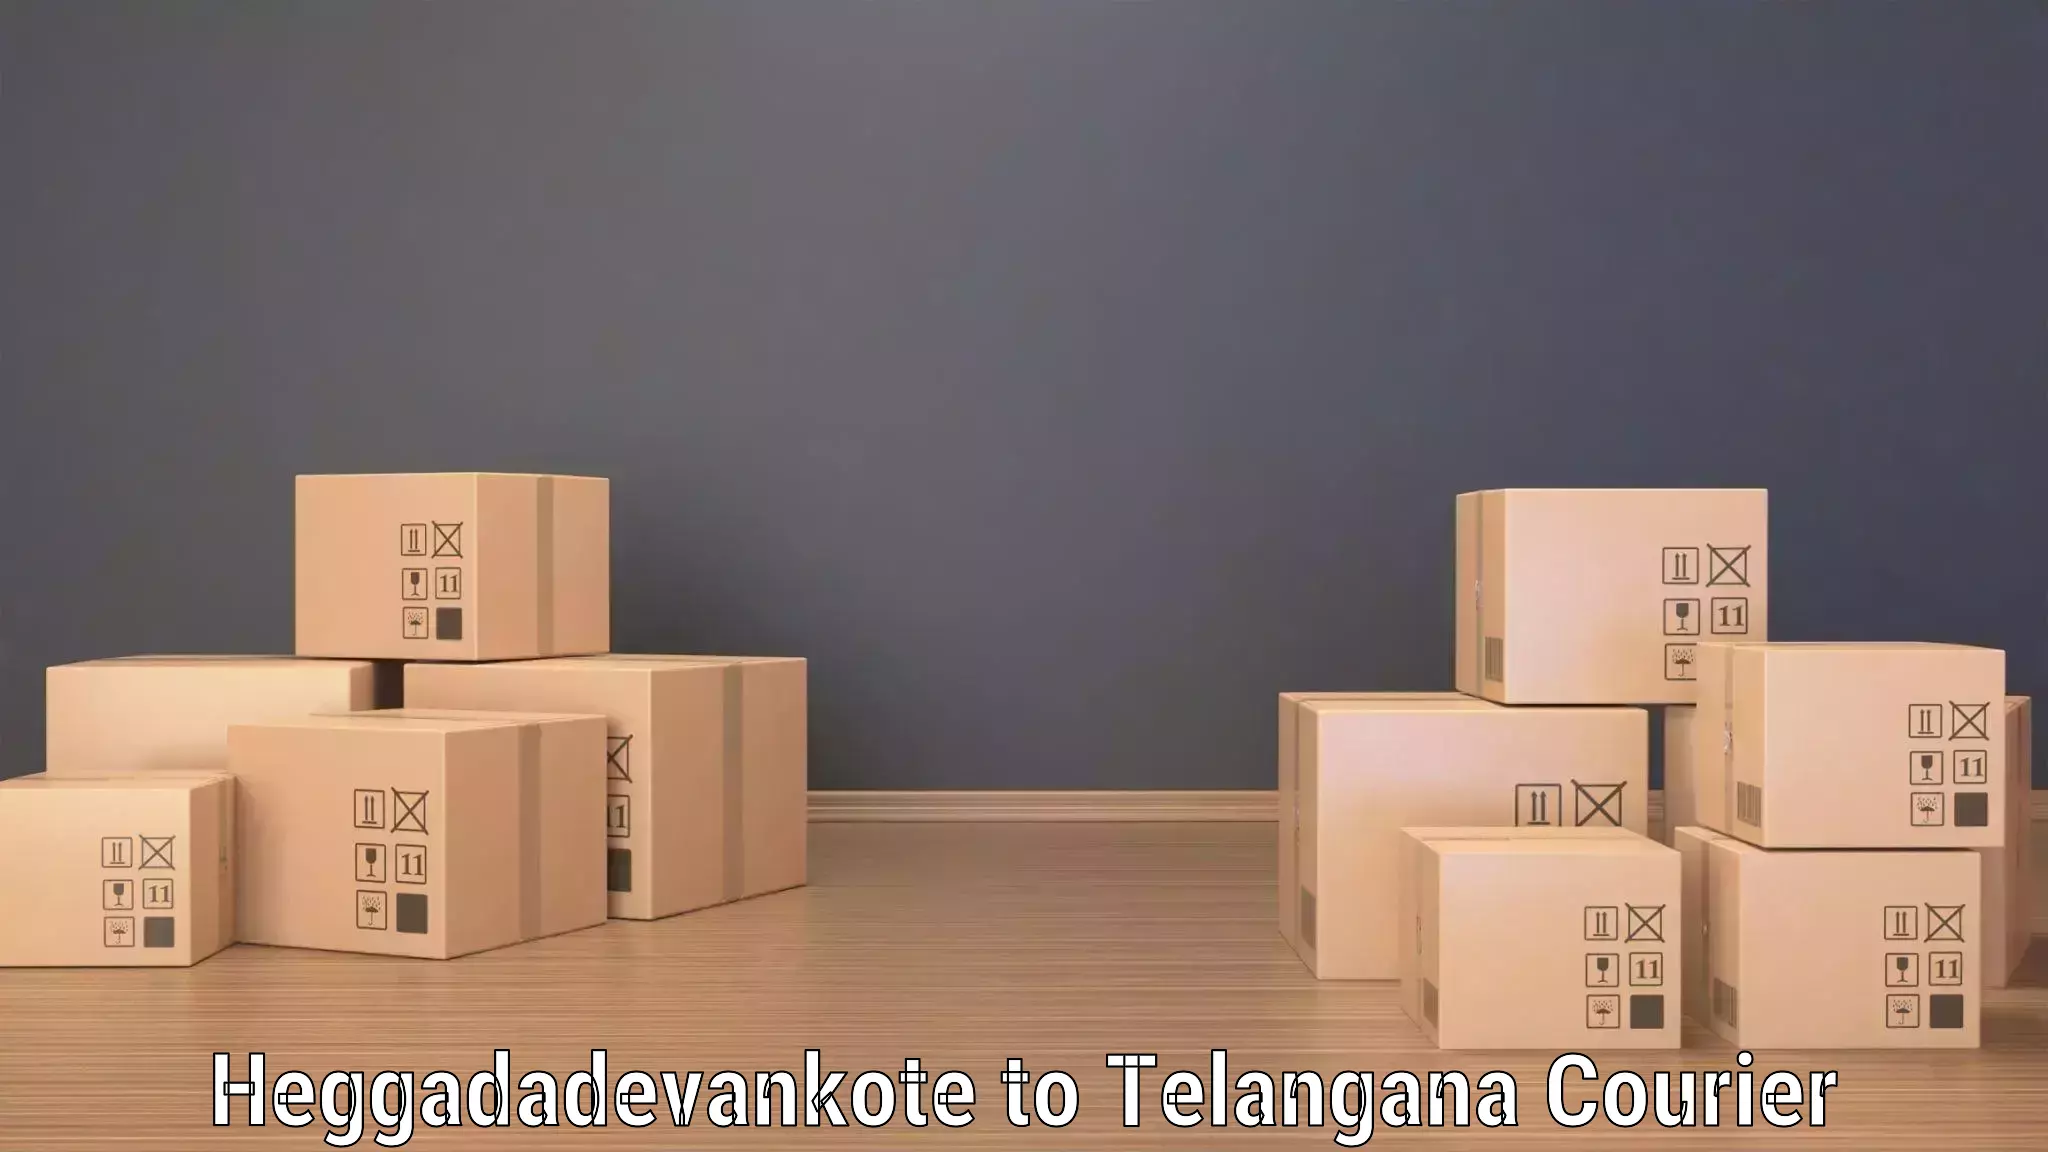 Nationwide shipping coverage Heggadadevankote to Nizamabad